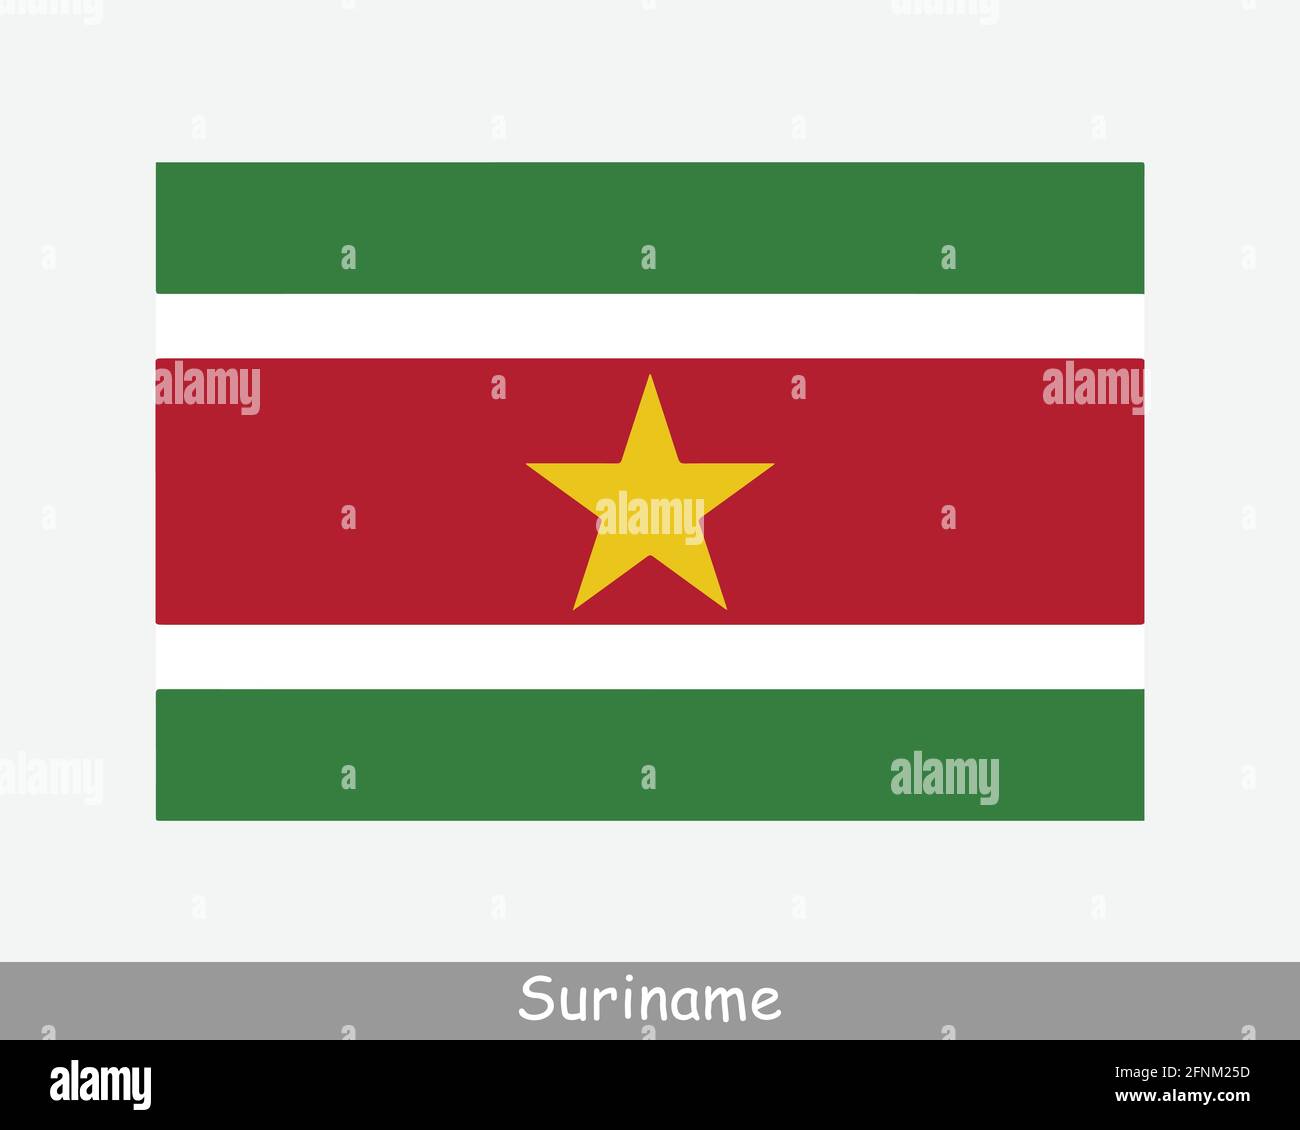 Nationale Flagge von Suriname. Flagge Des Surinamesischen Landes. Republik Suriname detailliertes Banner. EPS-Vektorgrafik Datei ausschneiden Stock Vektor